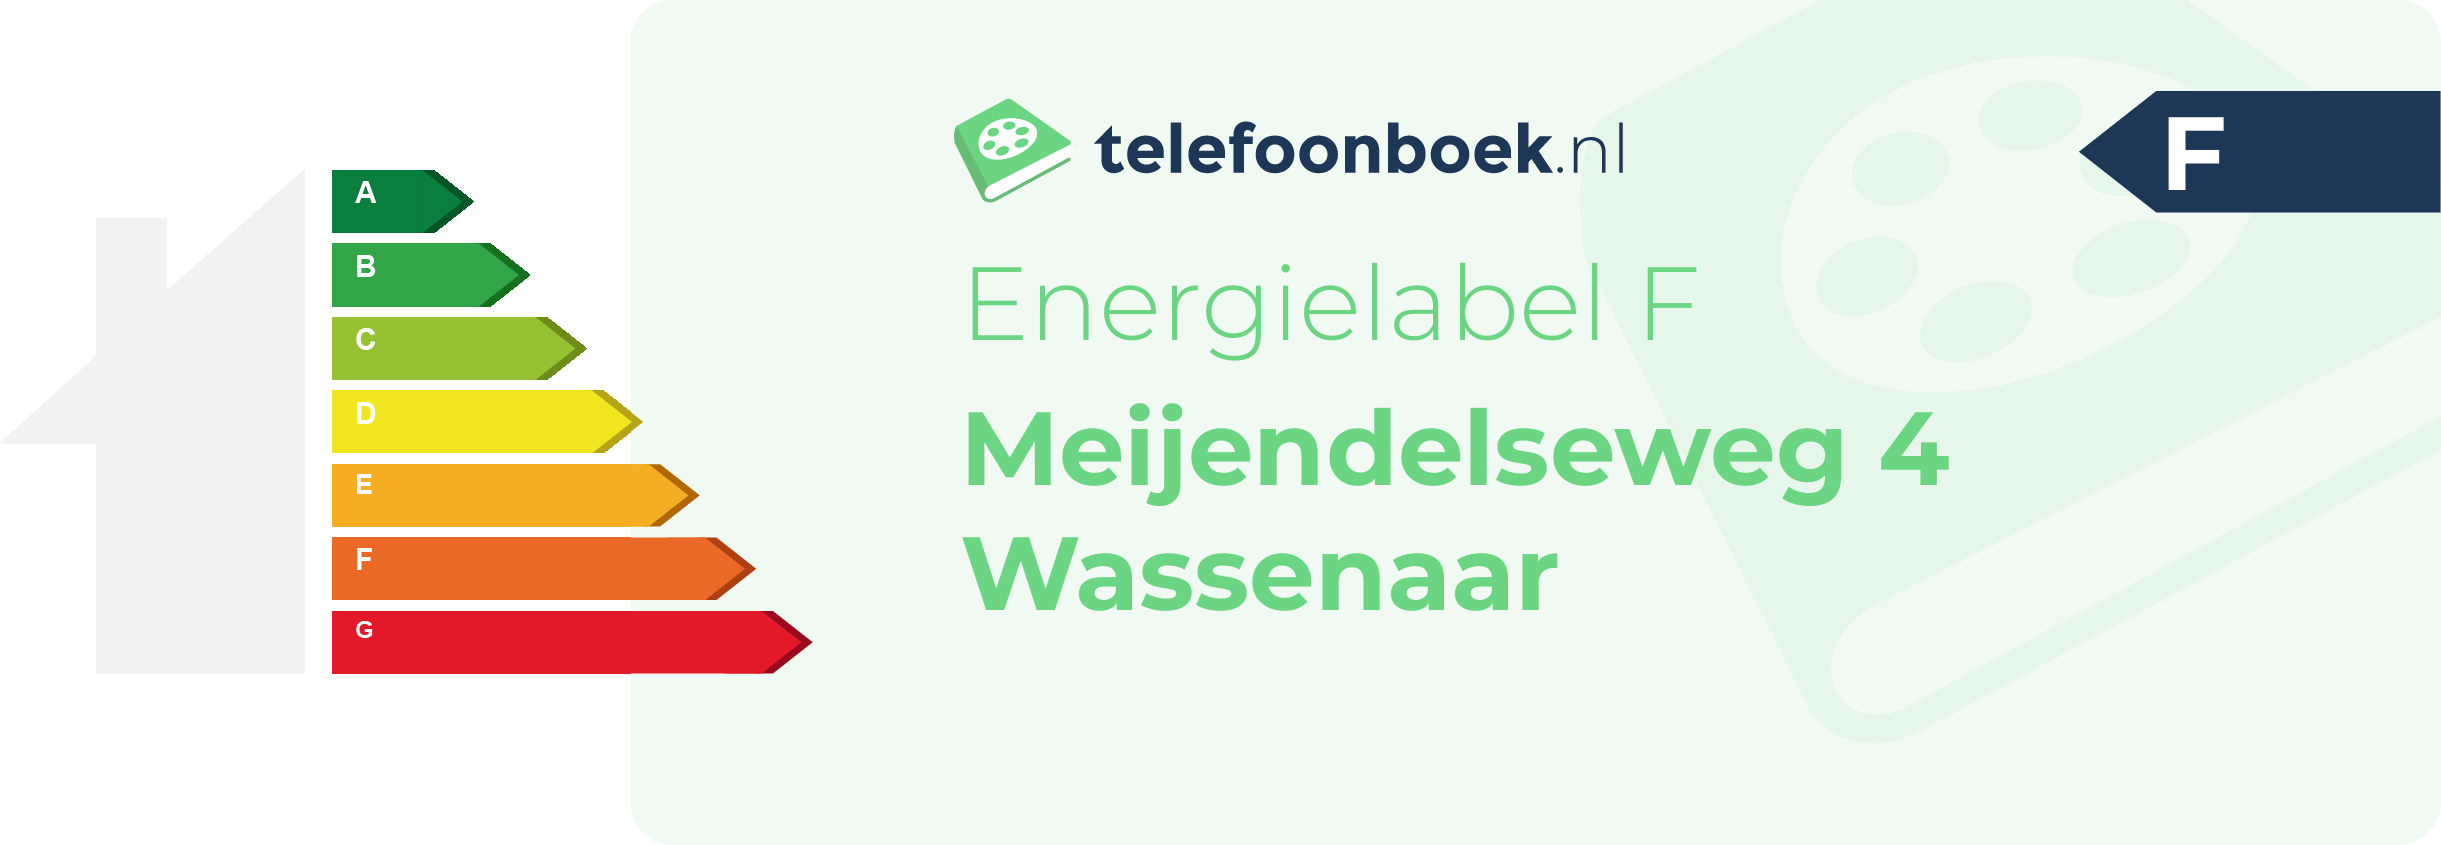 Energielabel Meijendelseweg 4 Wassenaar